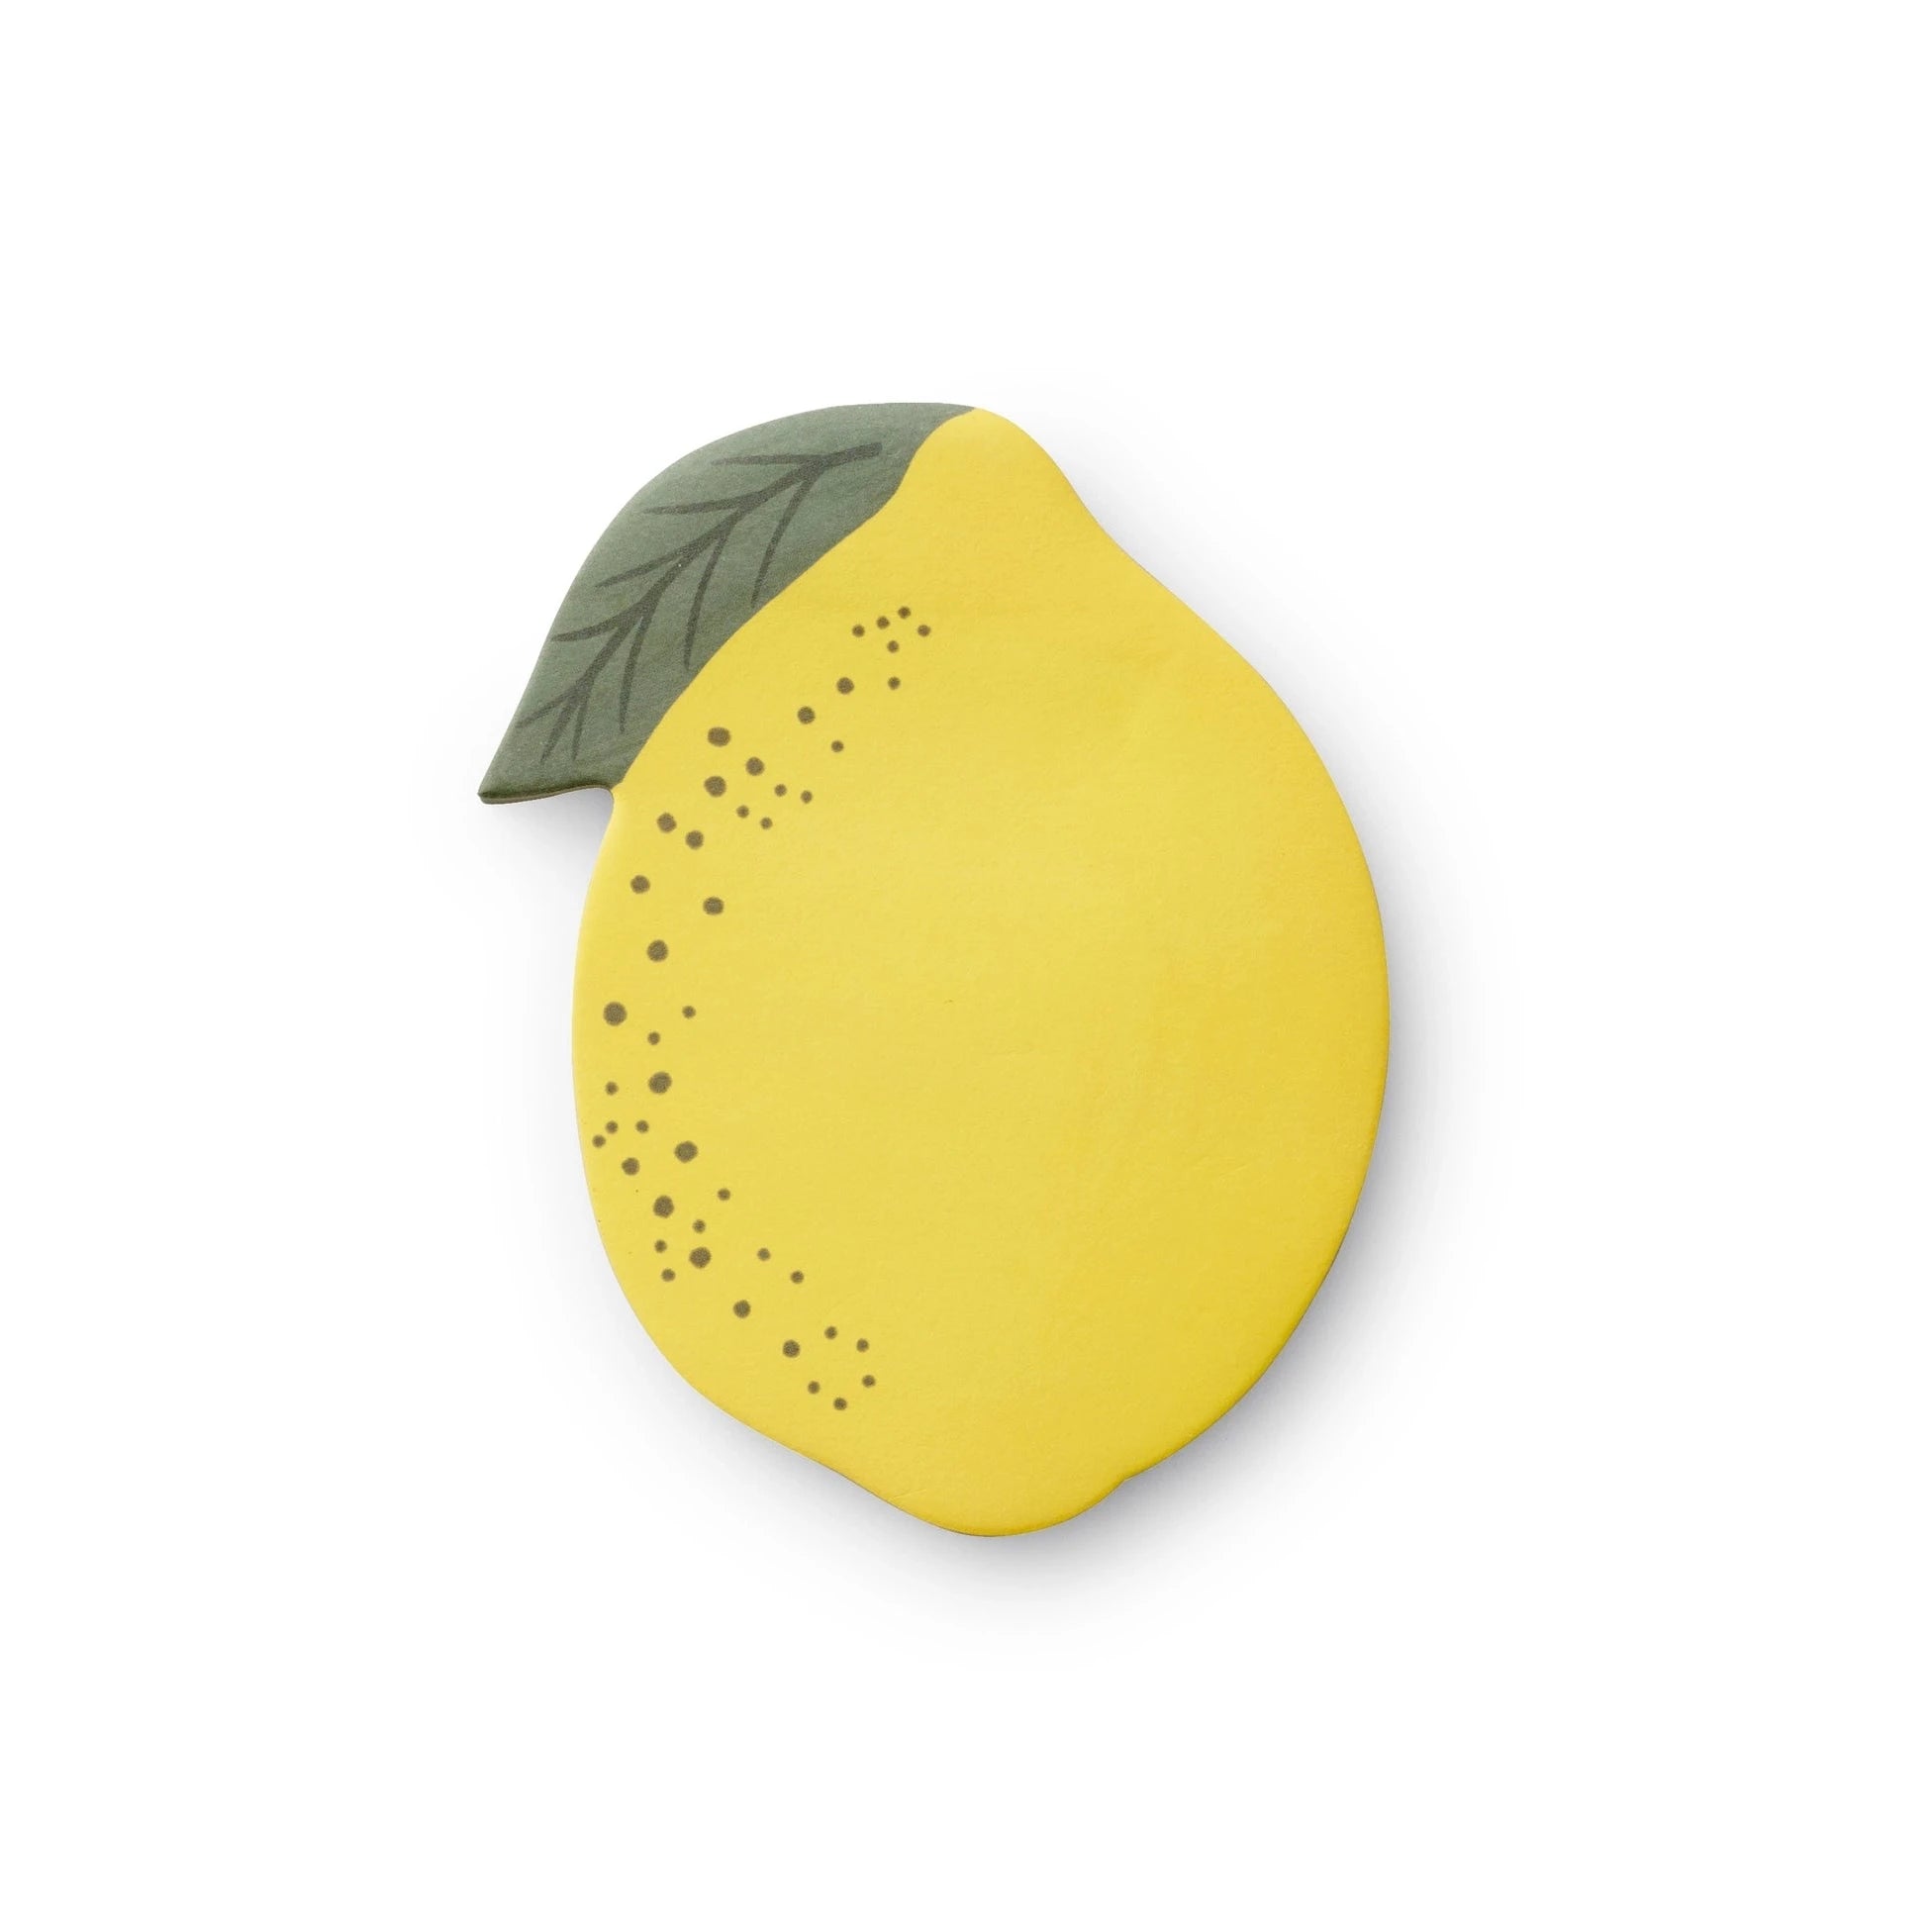 yellow lemon shaped sticky notepad